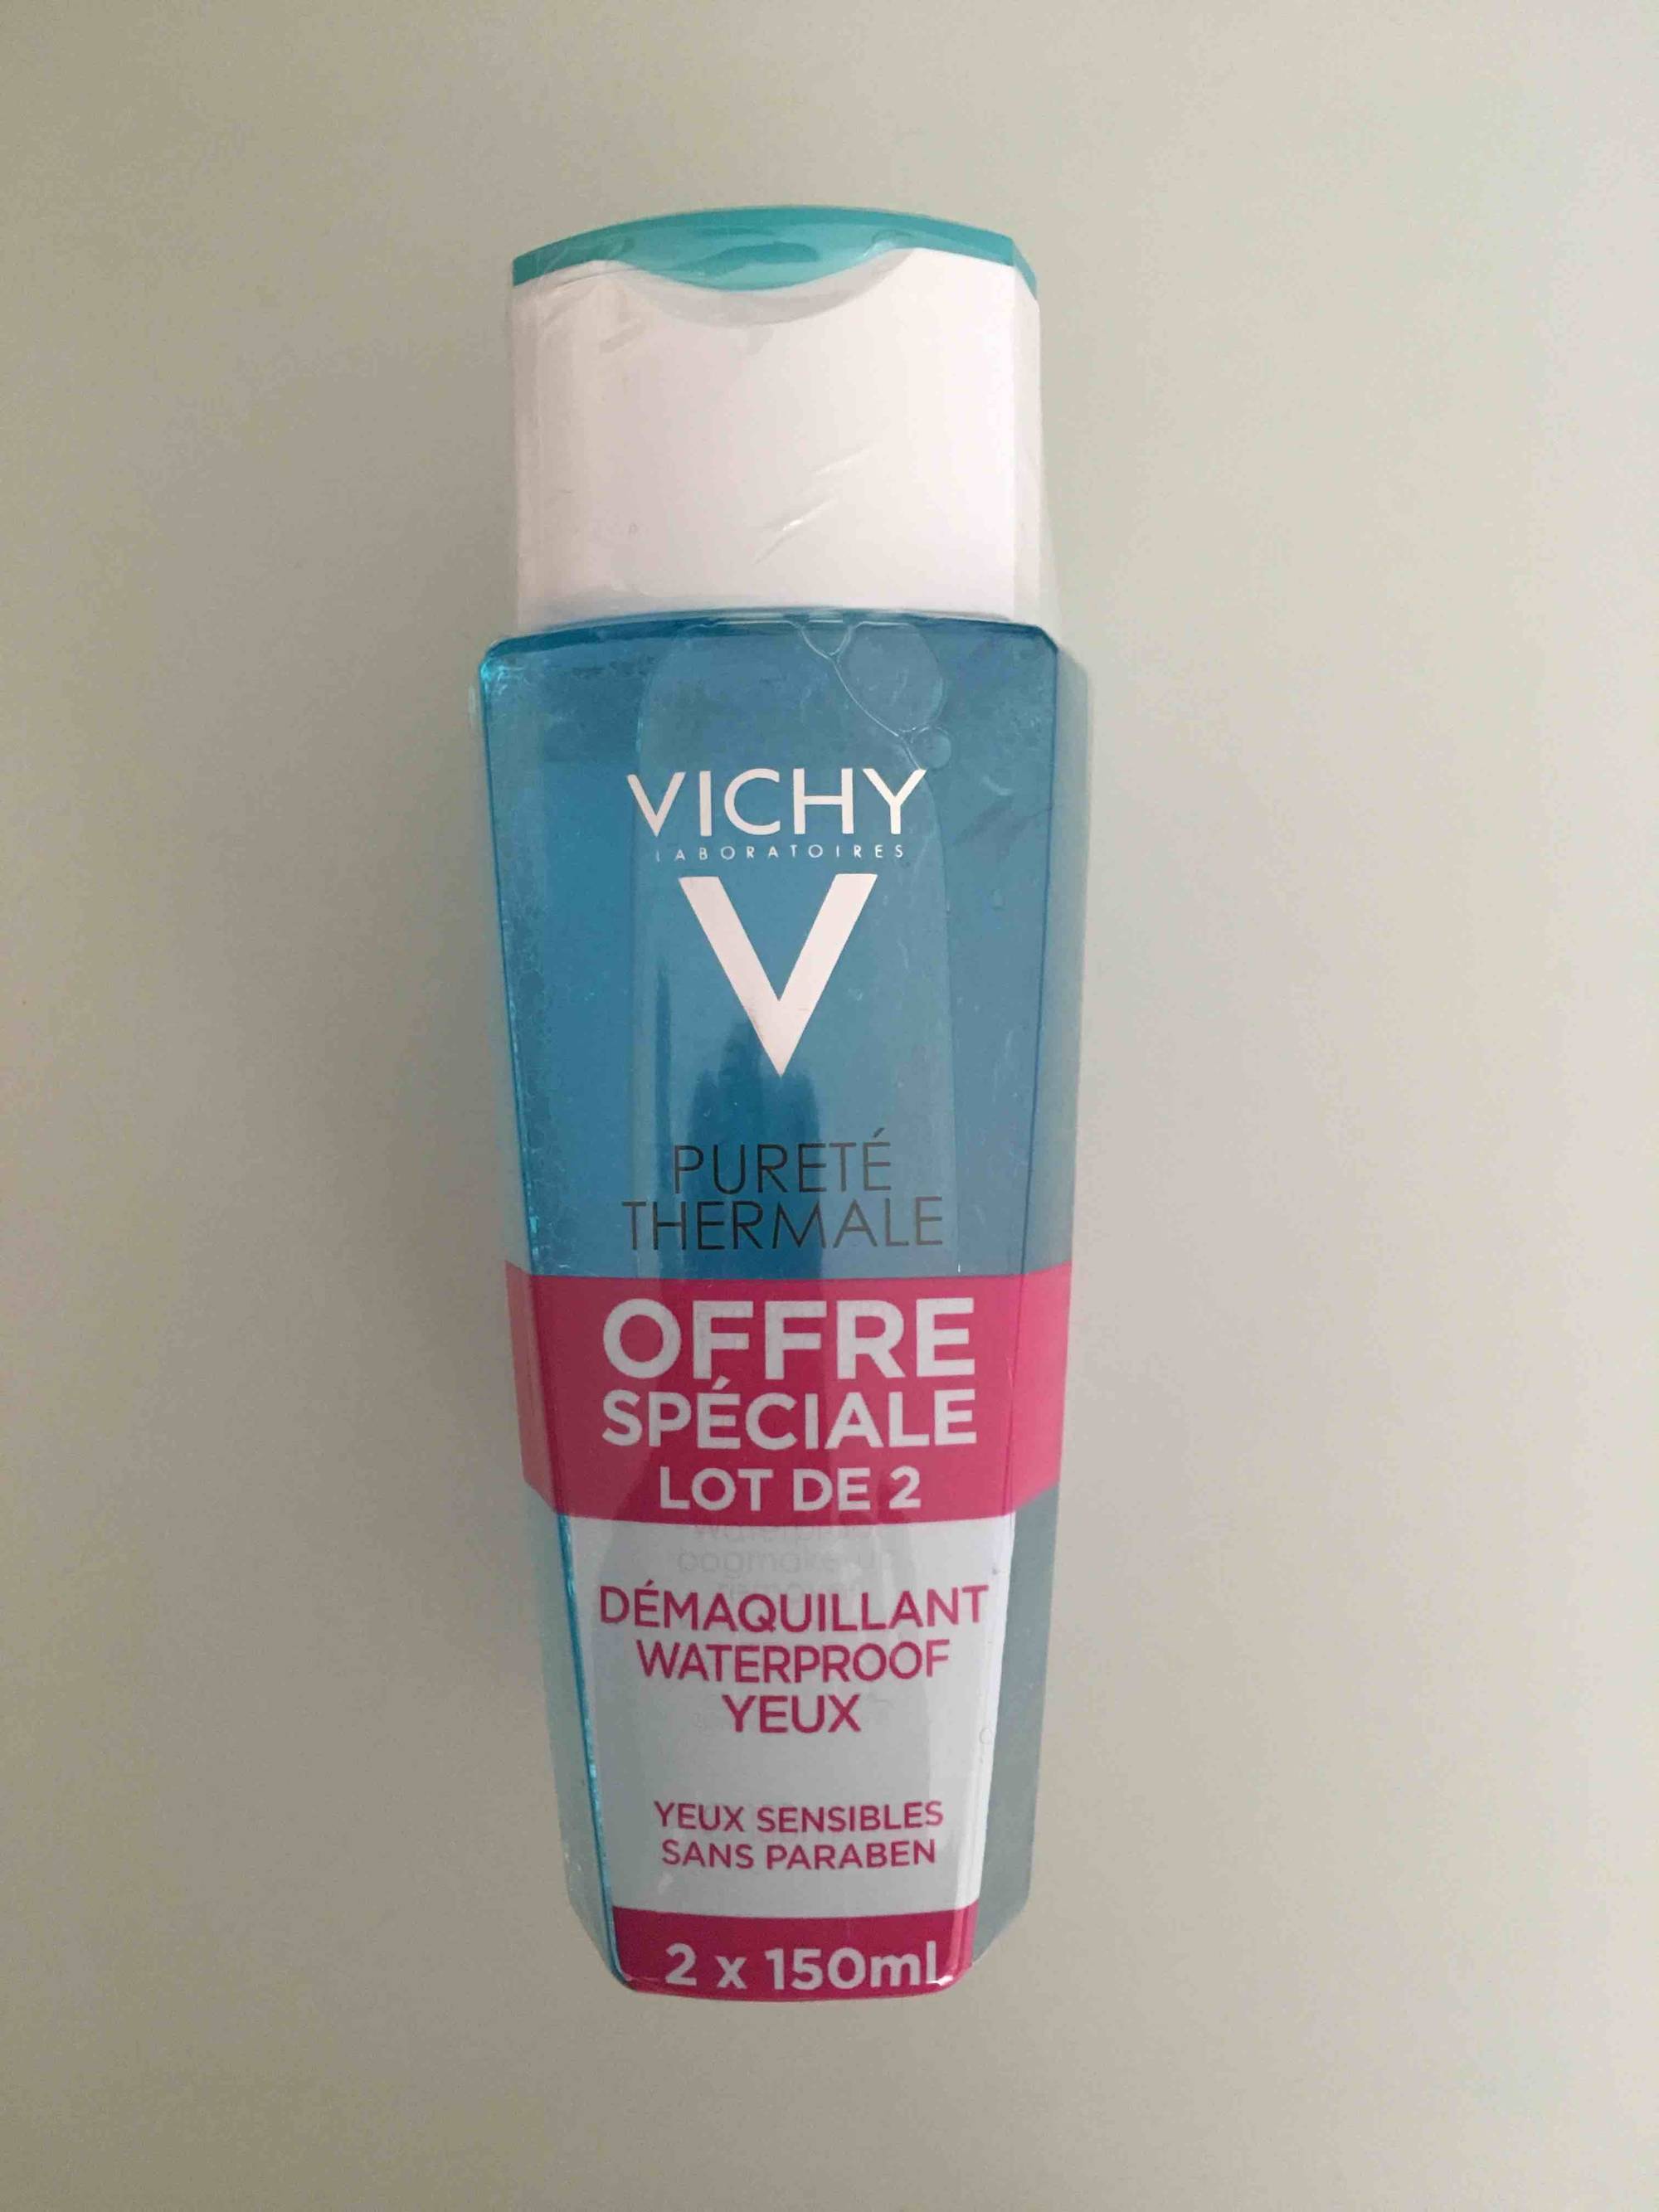 Vichy: Pureté Thermale Démaquillant Yeux Waterproof